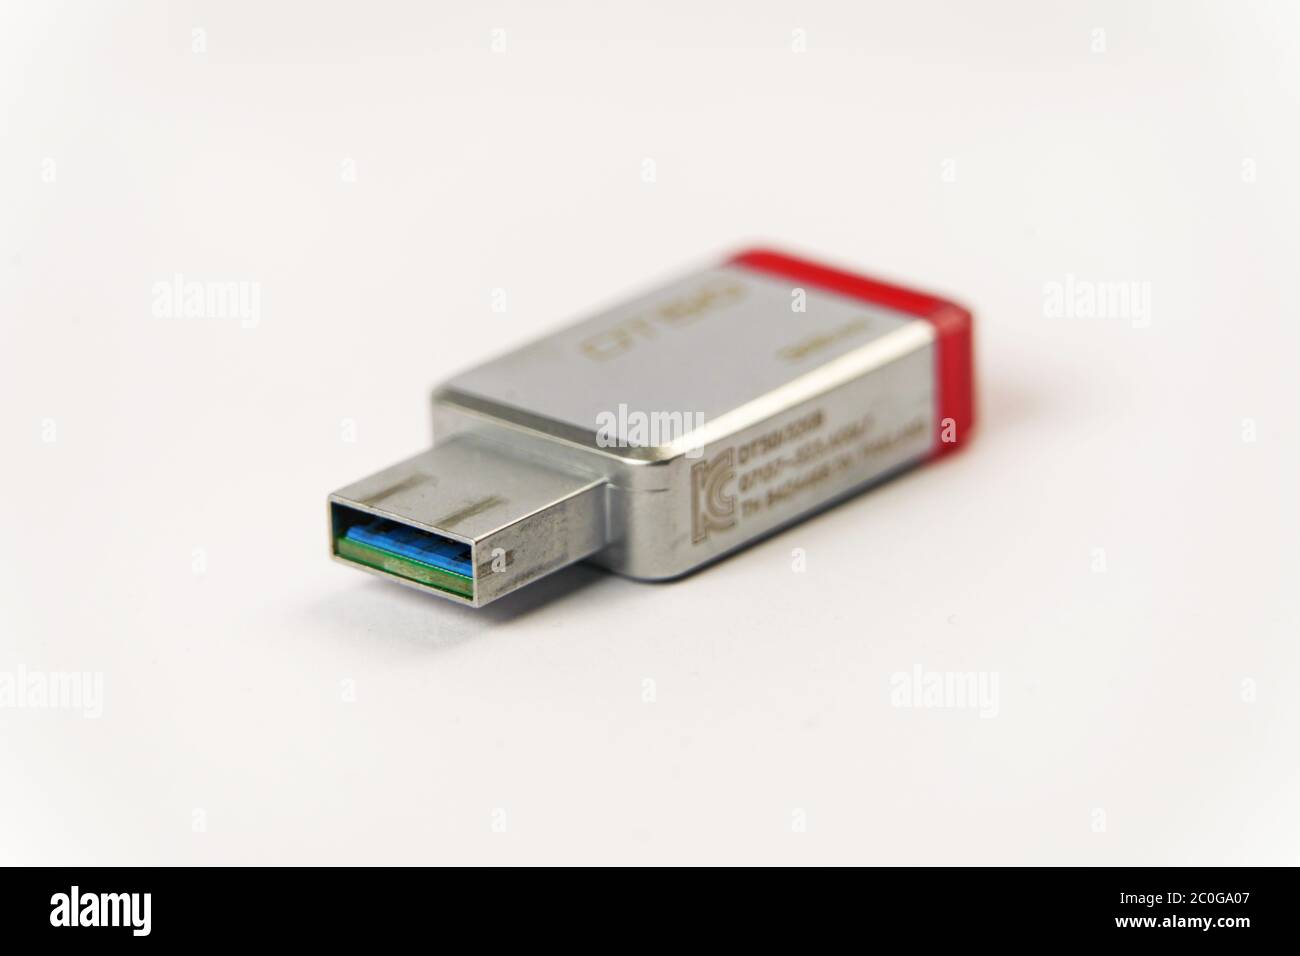 USB-Datenstick für PC und Mac. Nahaufnahme auf weißem Hintergrund  Stockfotografie - Alamy